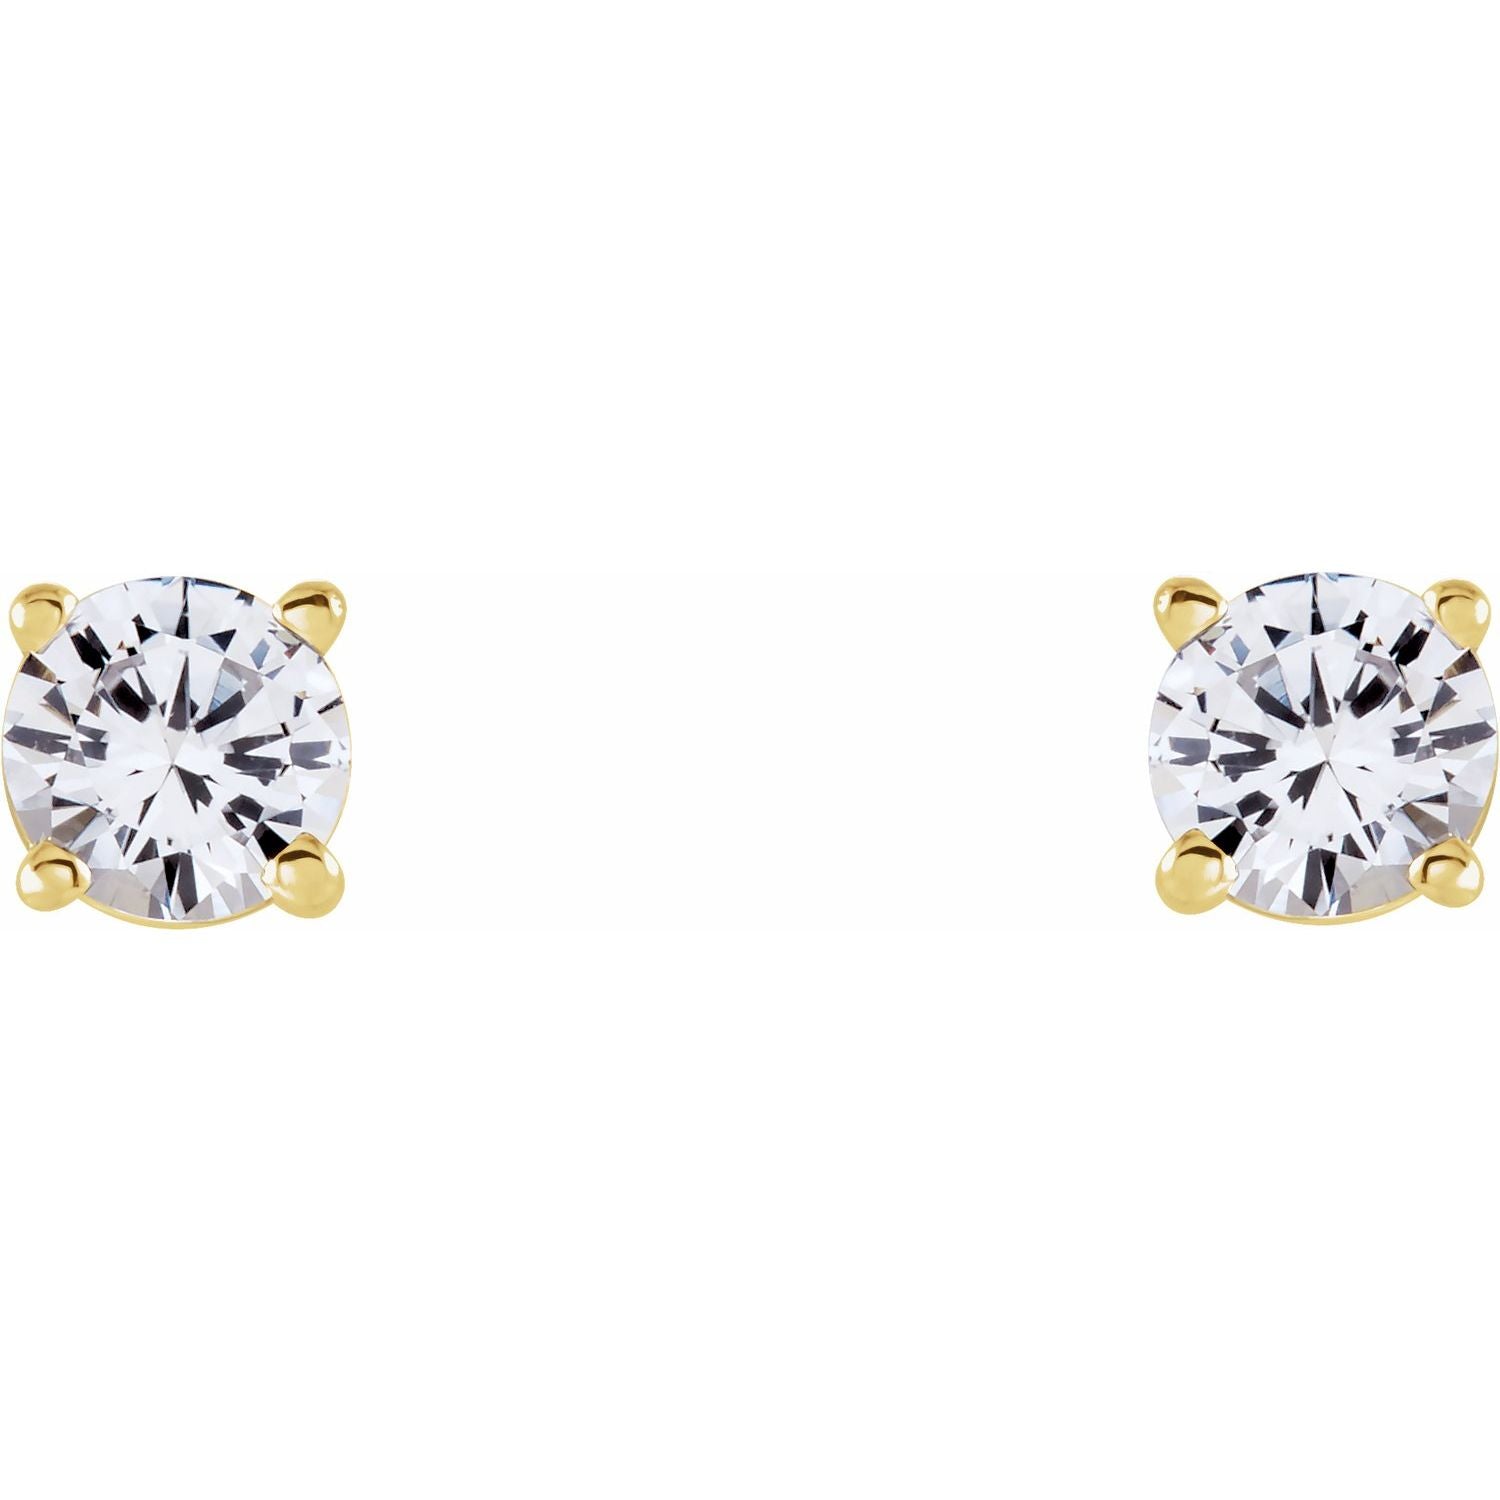 14K Gold Natural White Sapphire Stud Earrings